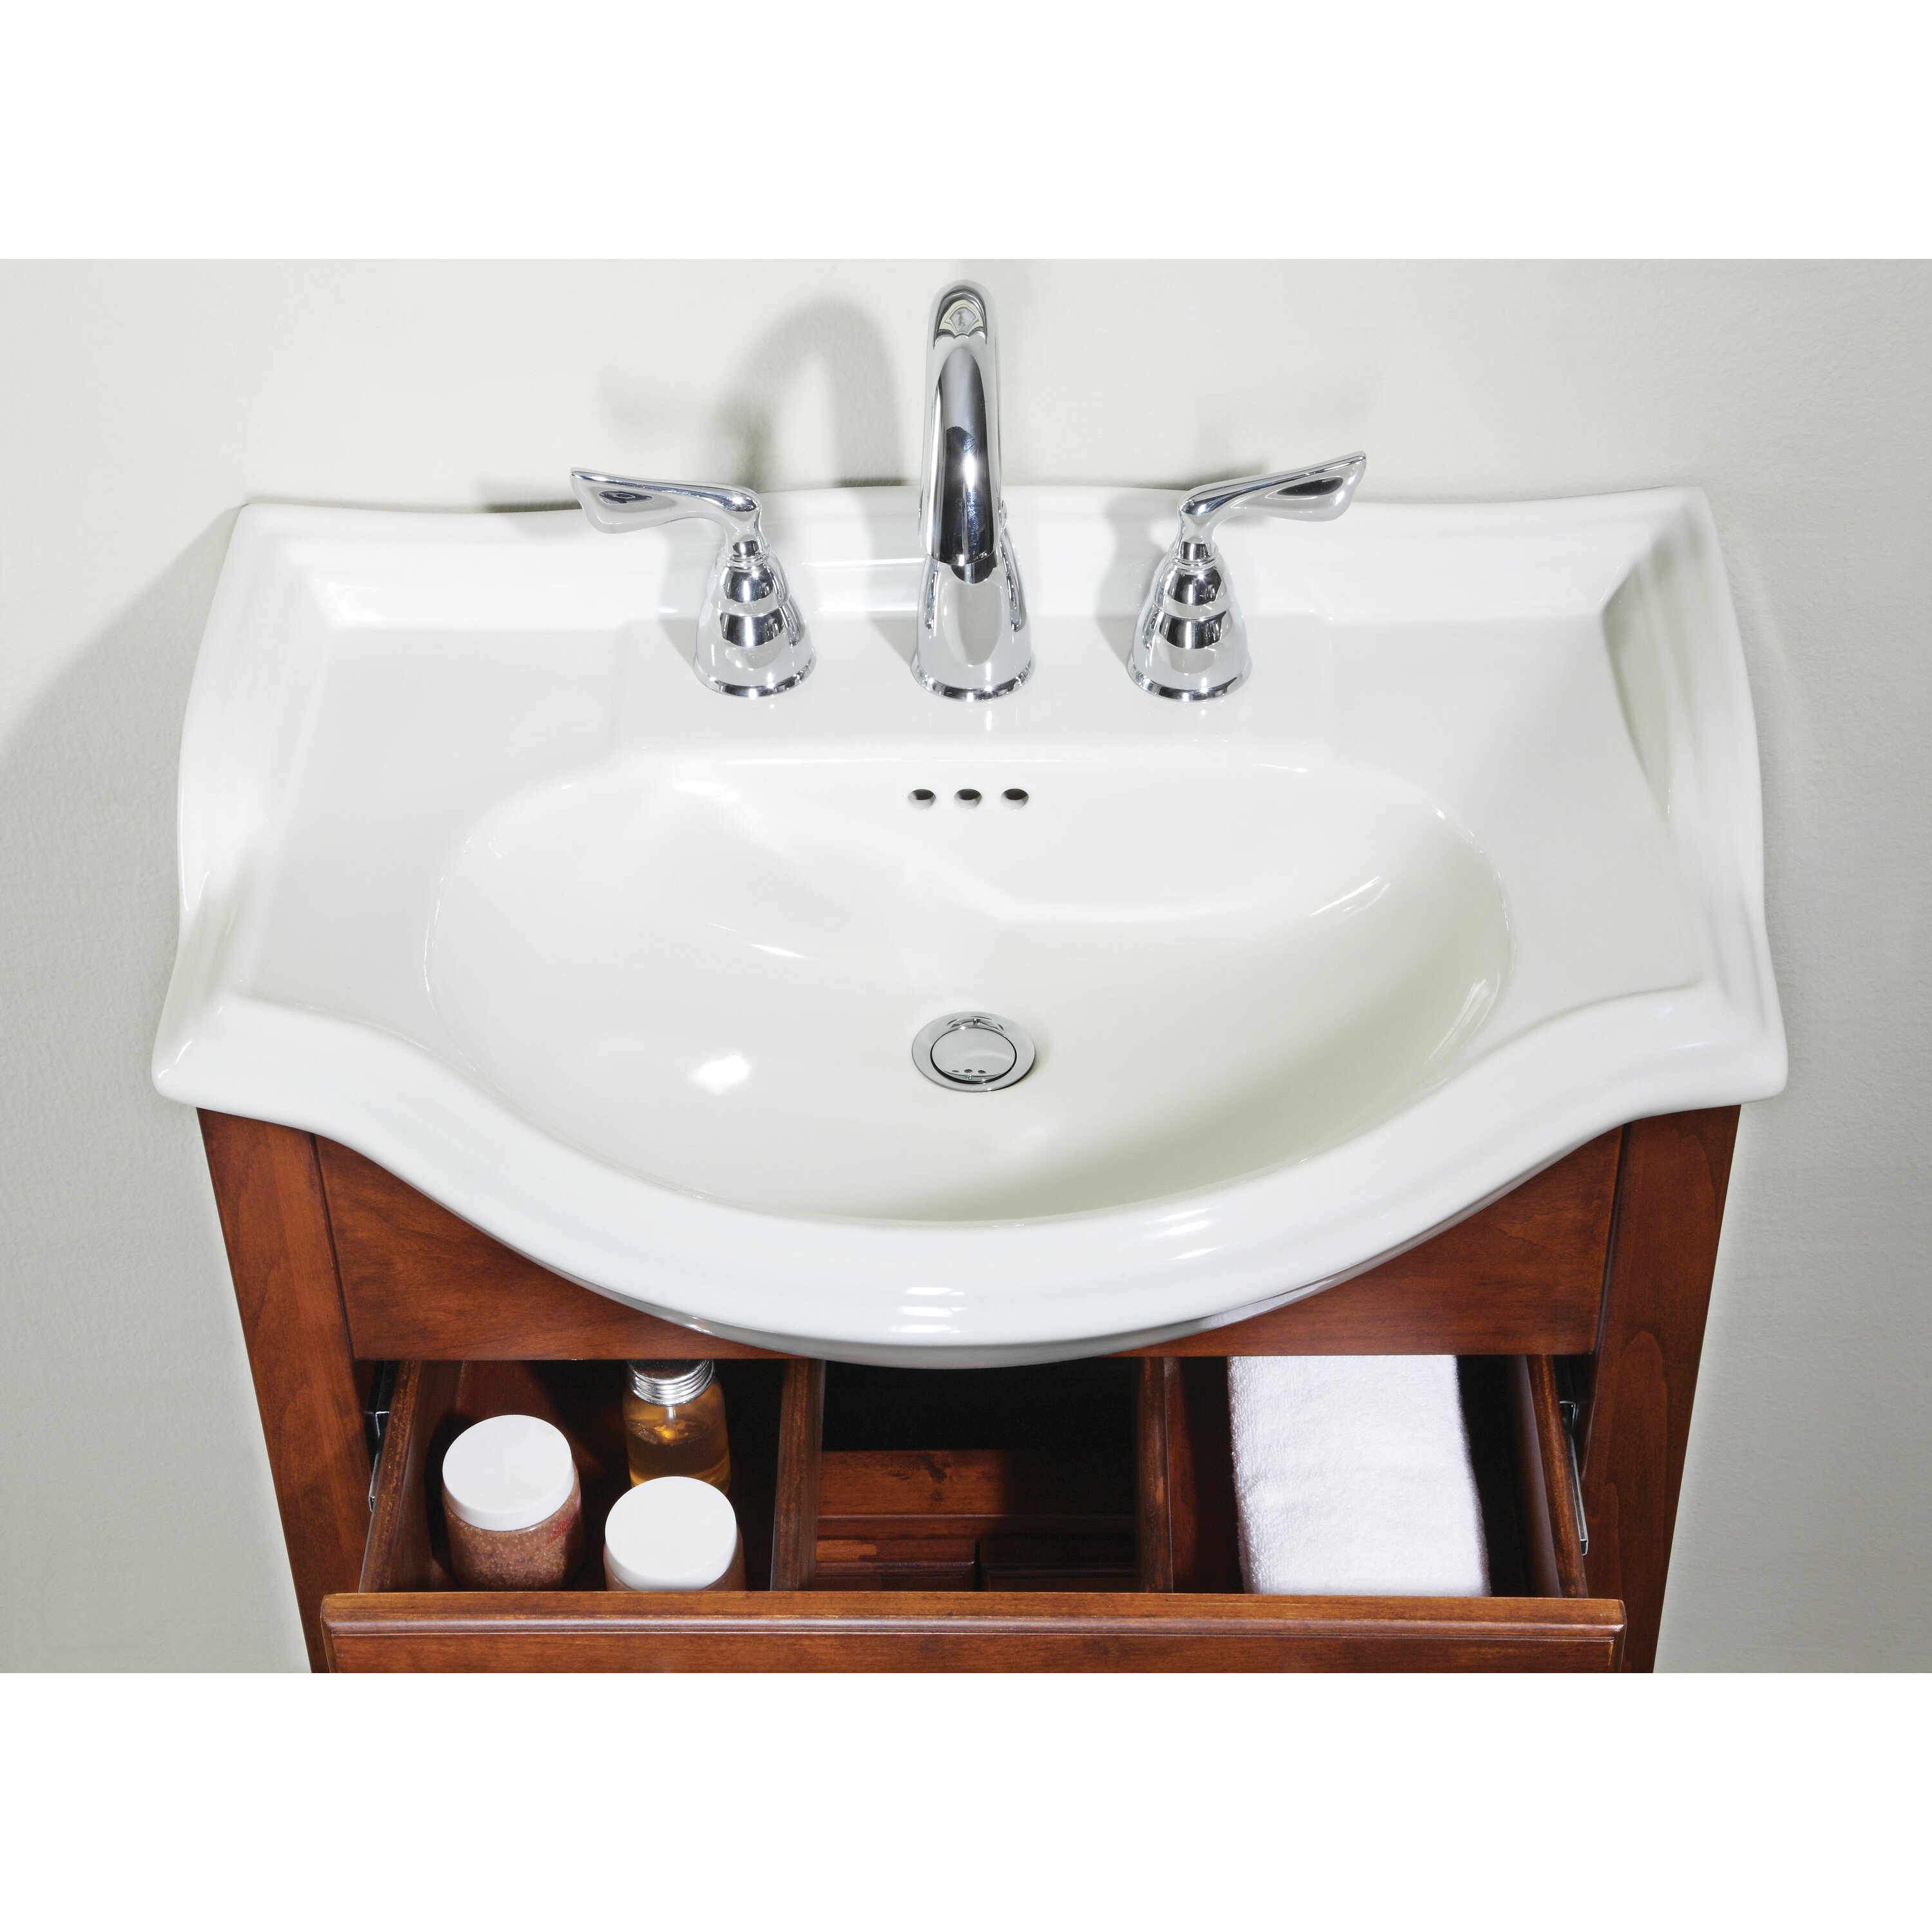 Empire Industries Windsor 22" Narrow Depth Bathroom Vanity & Reviews | Wayfair